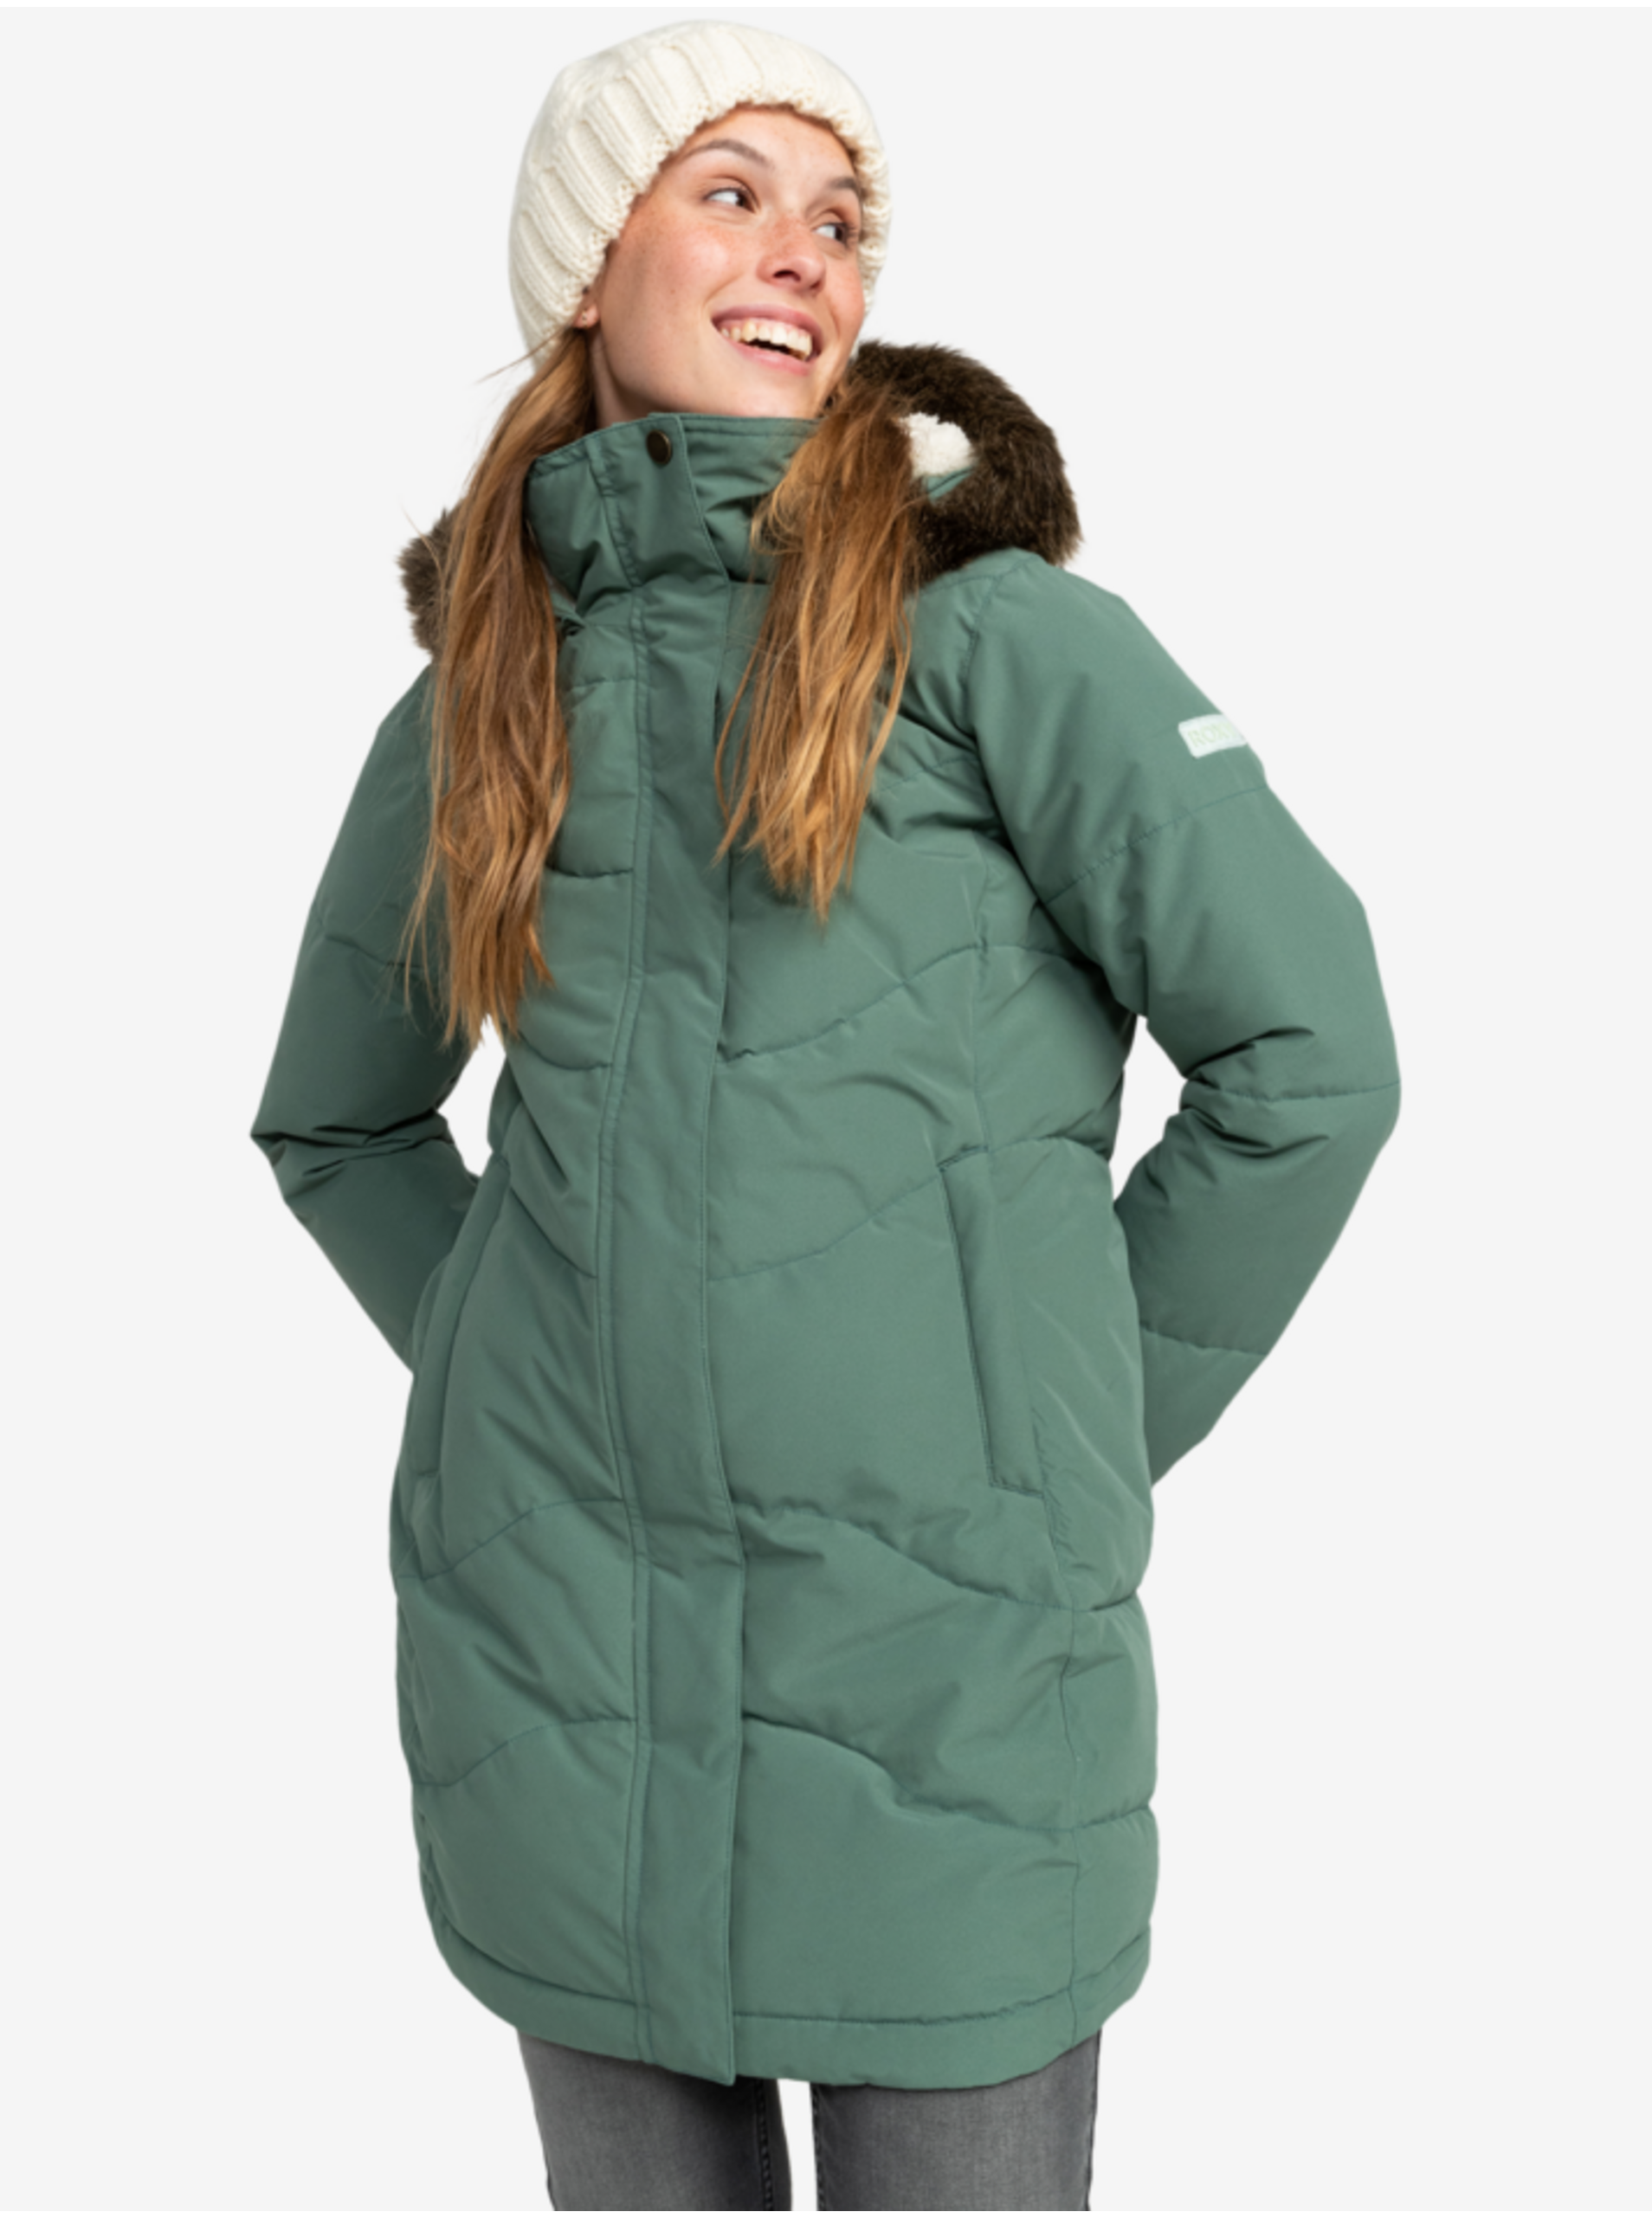 Lacno Svetlozelený dámsky zimný prešívaný kabát Roxy Ellie